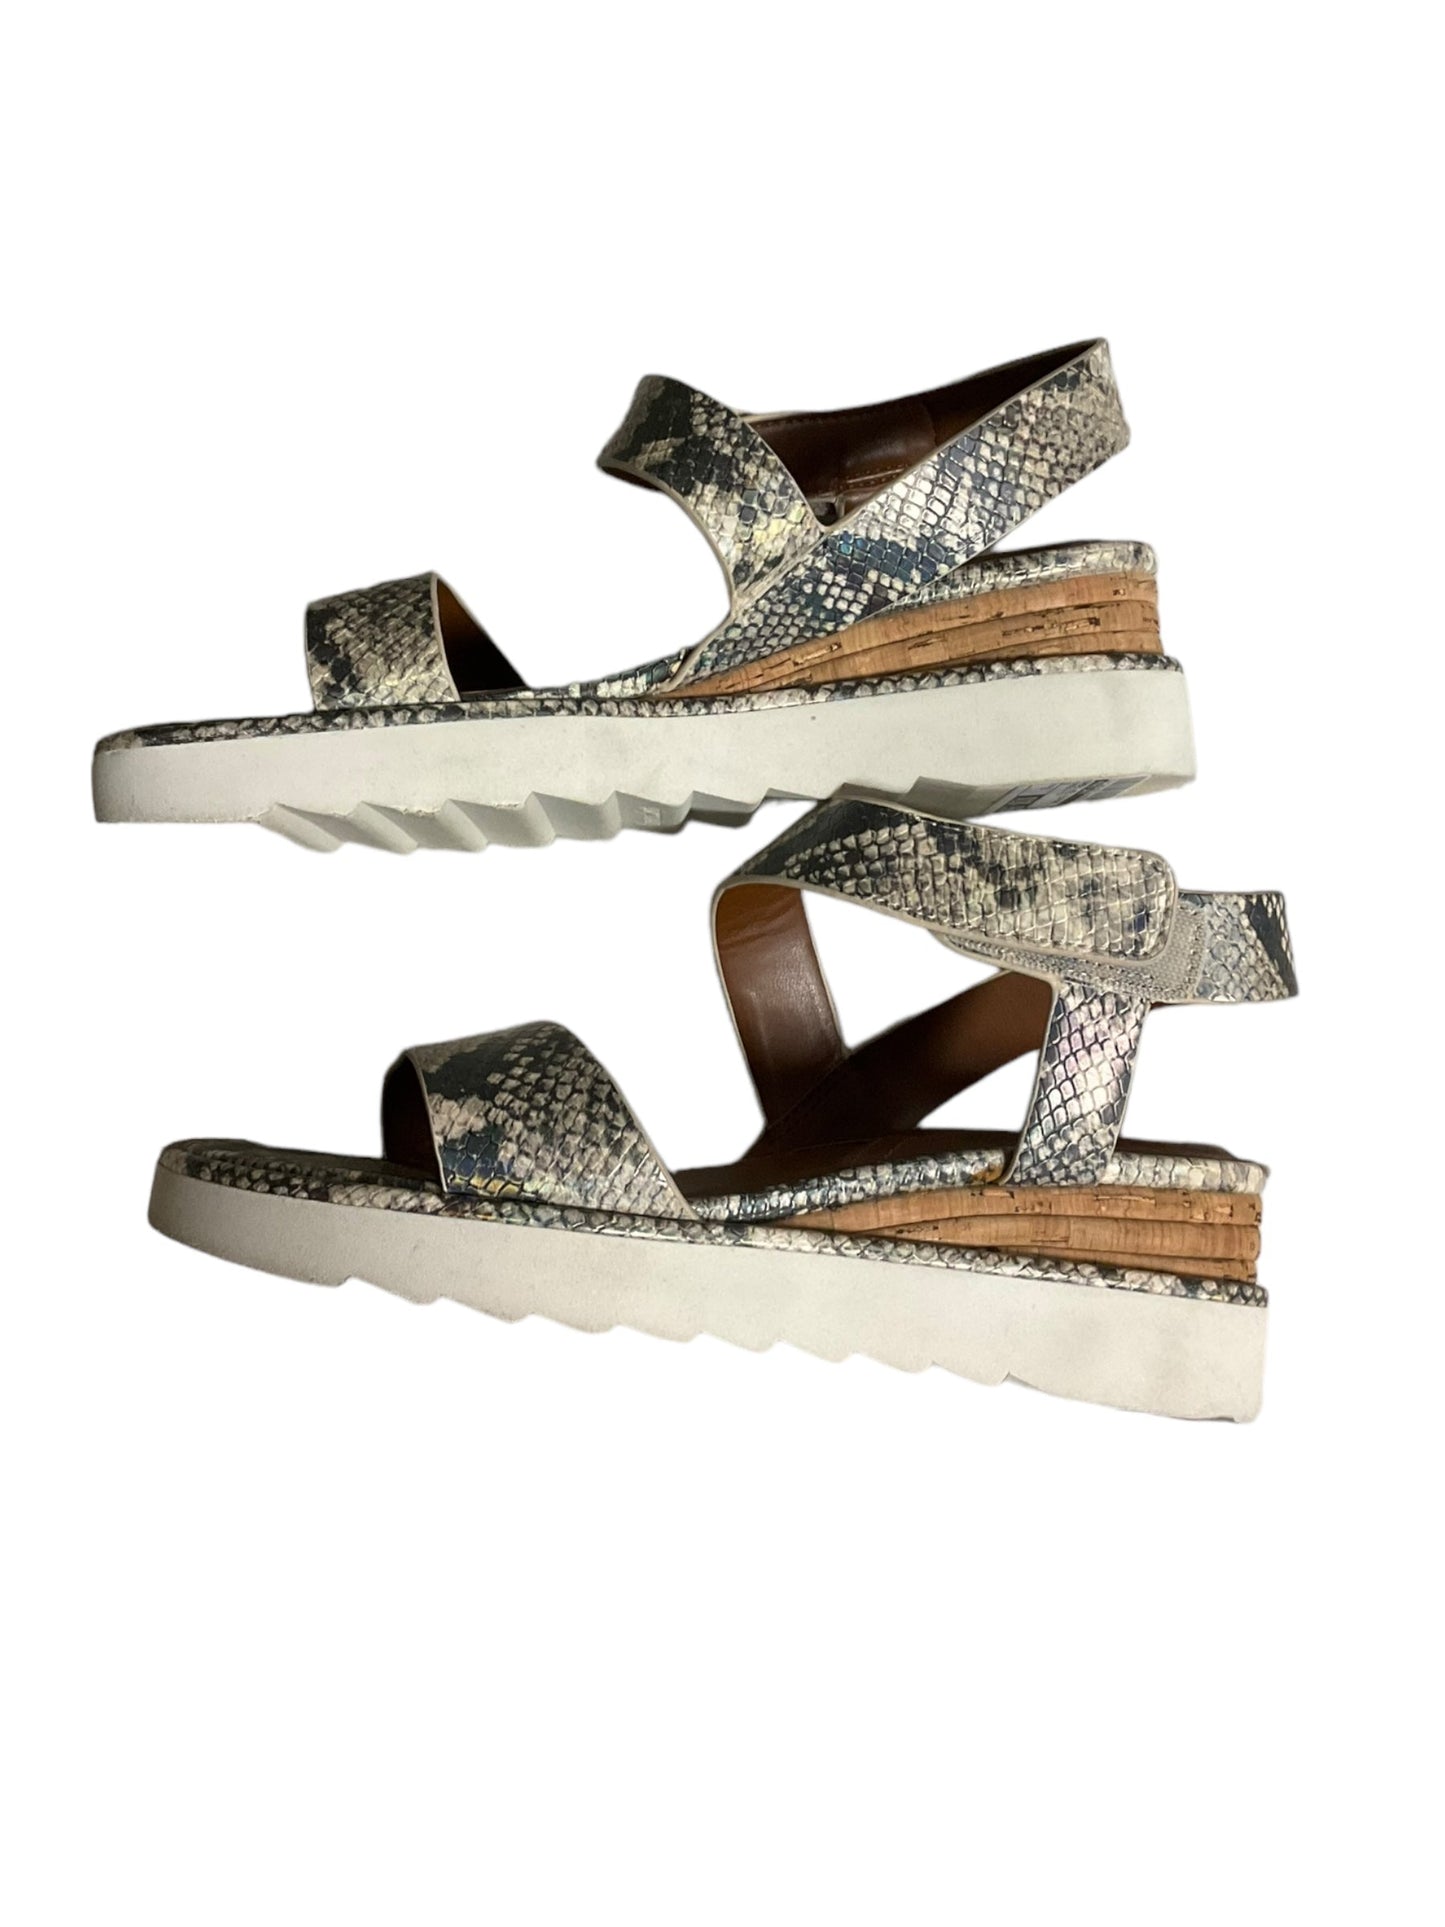 Snakeskin Print Sandals Heels Platform Franco Sarto, Size 8